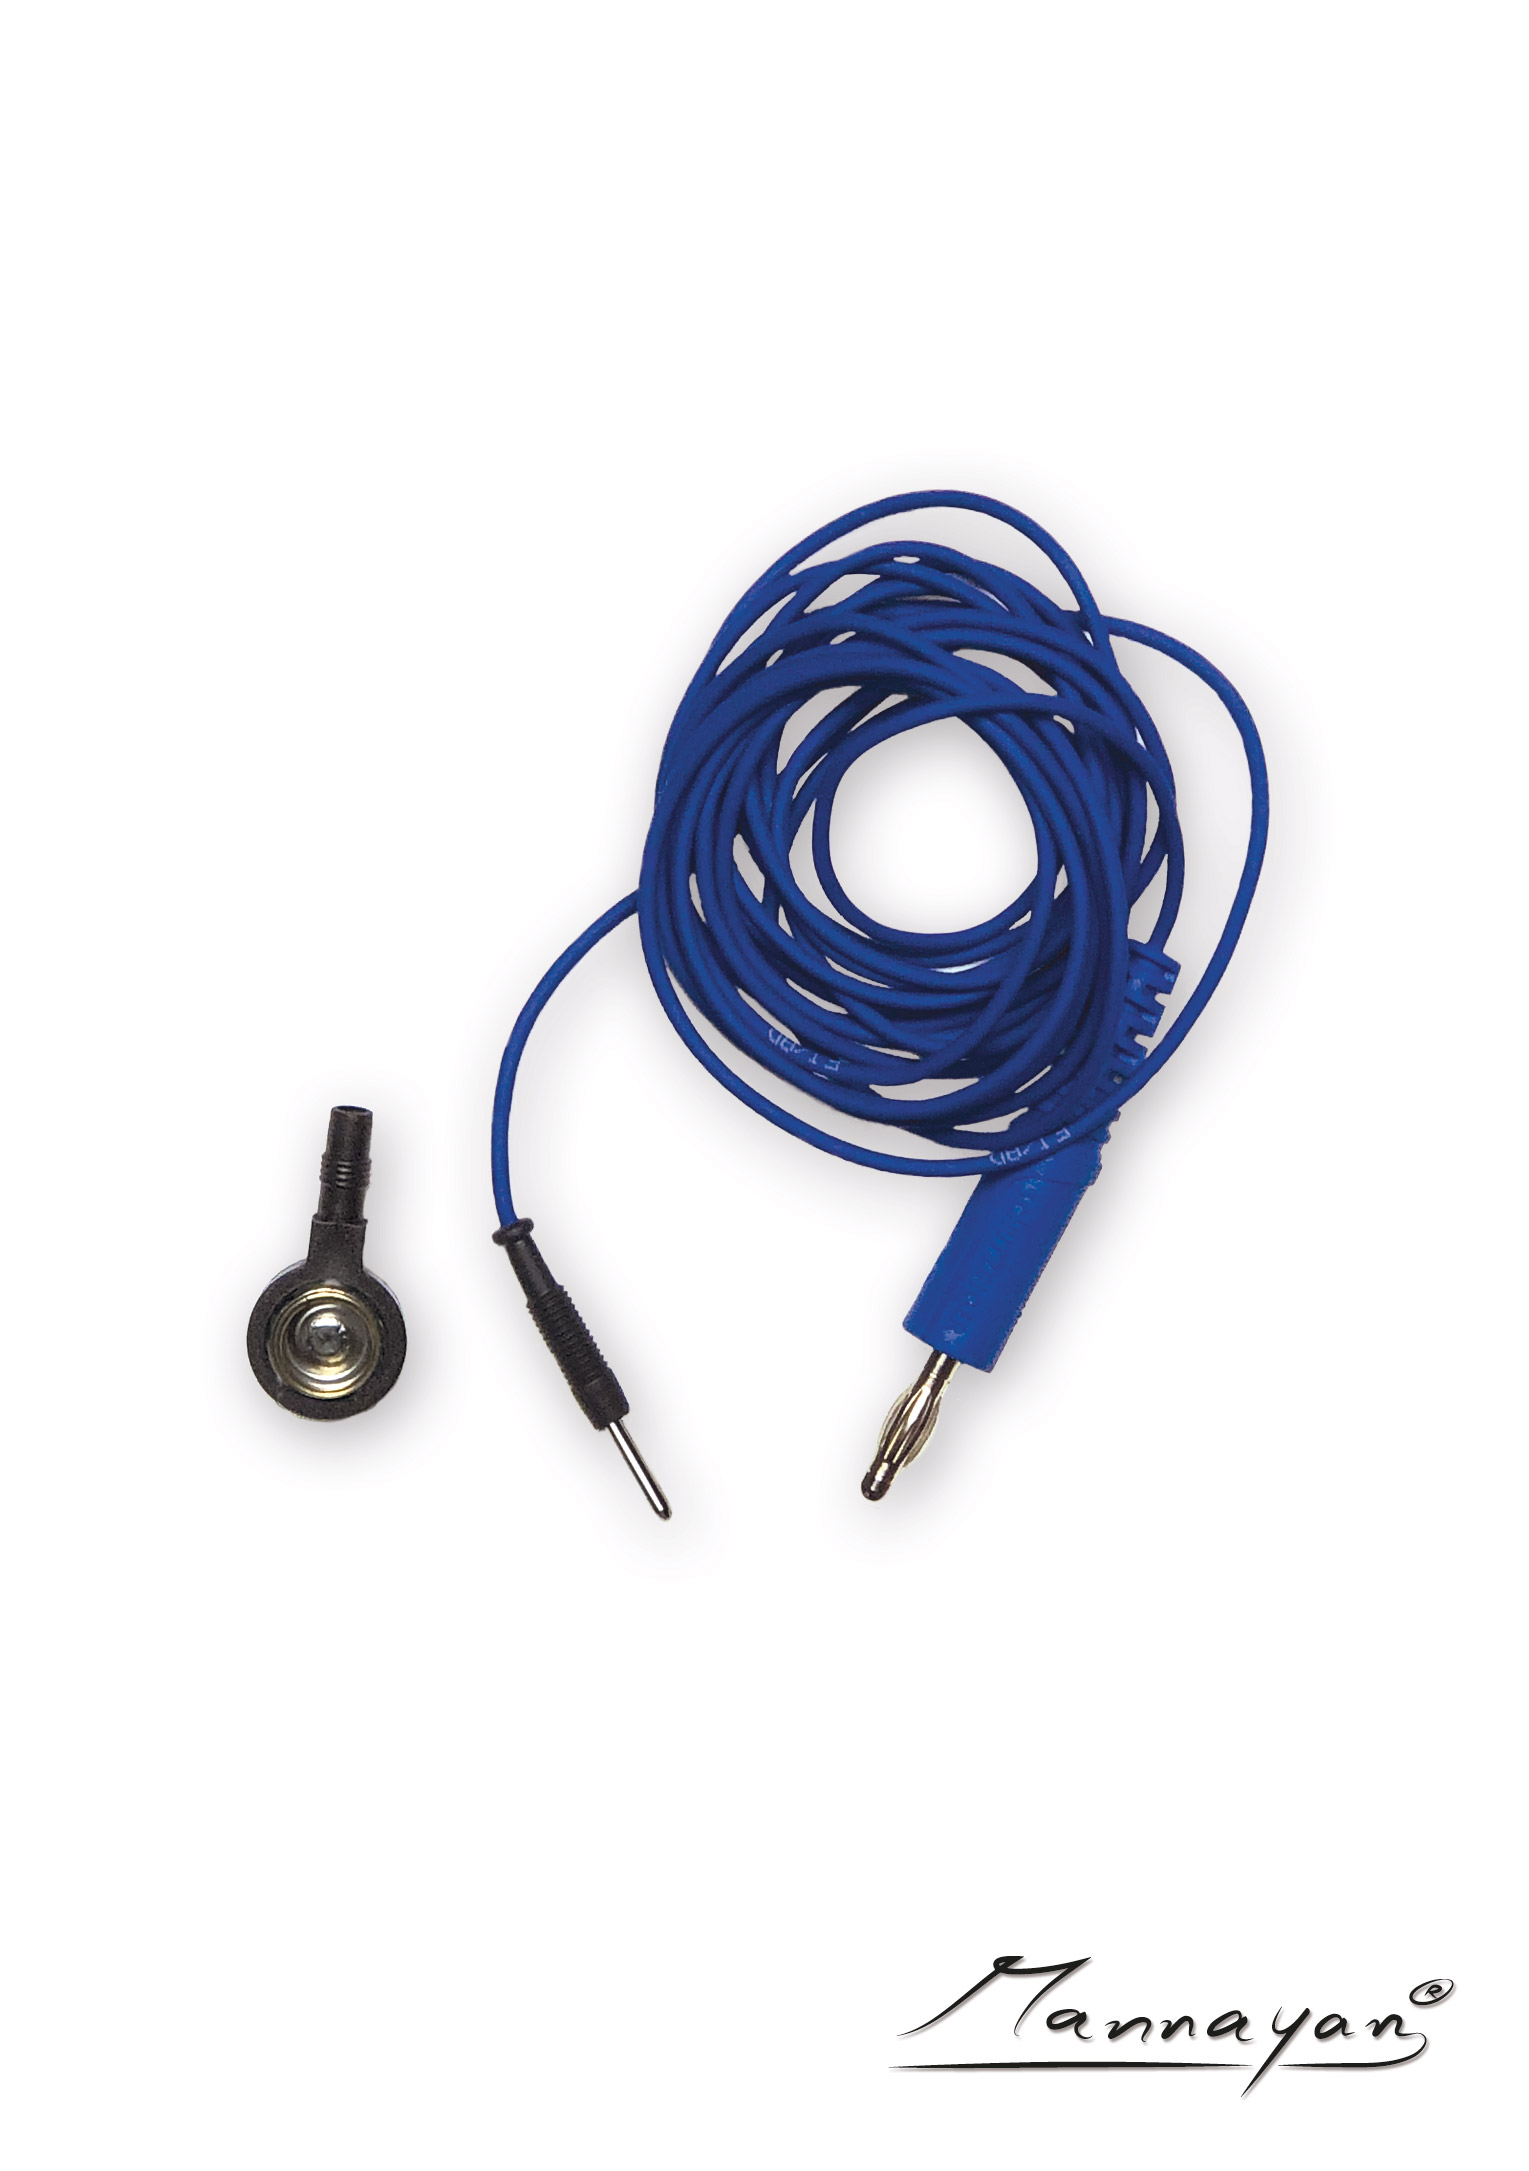 Cable (2,5 m) con adaptador de conector para electrodos textiles de superficie (azul)